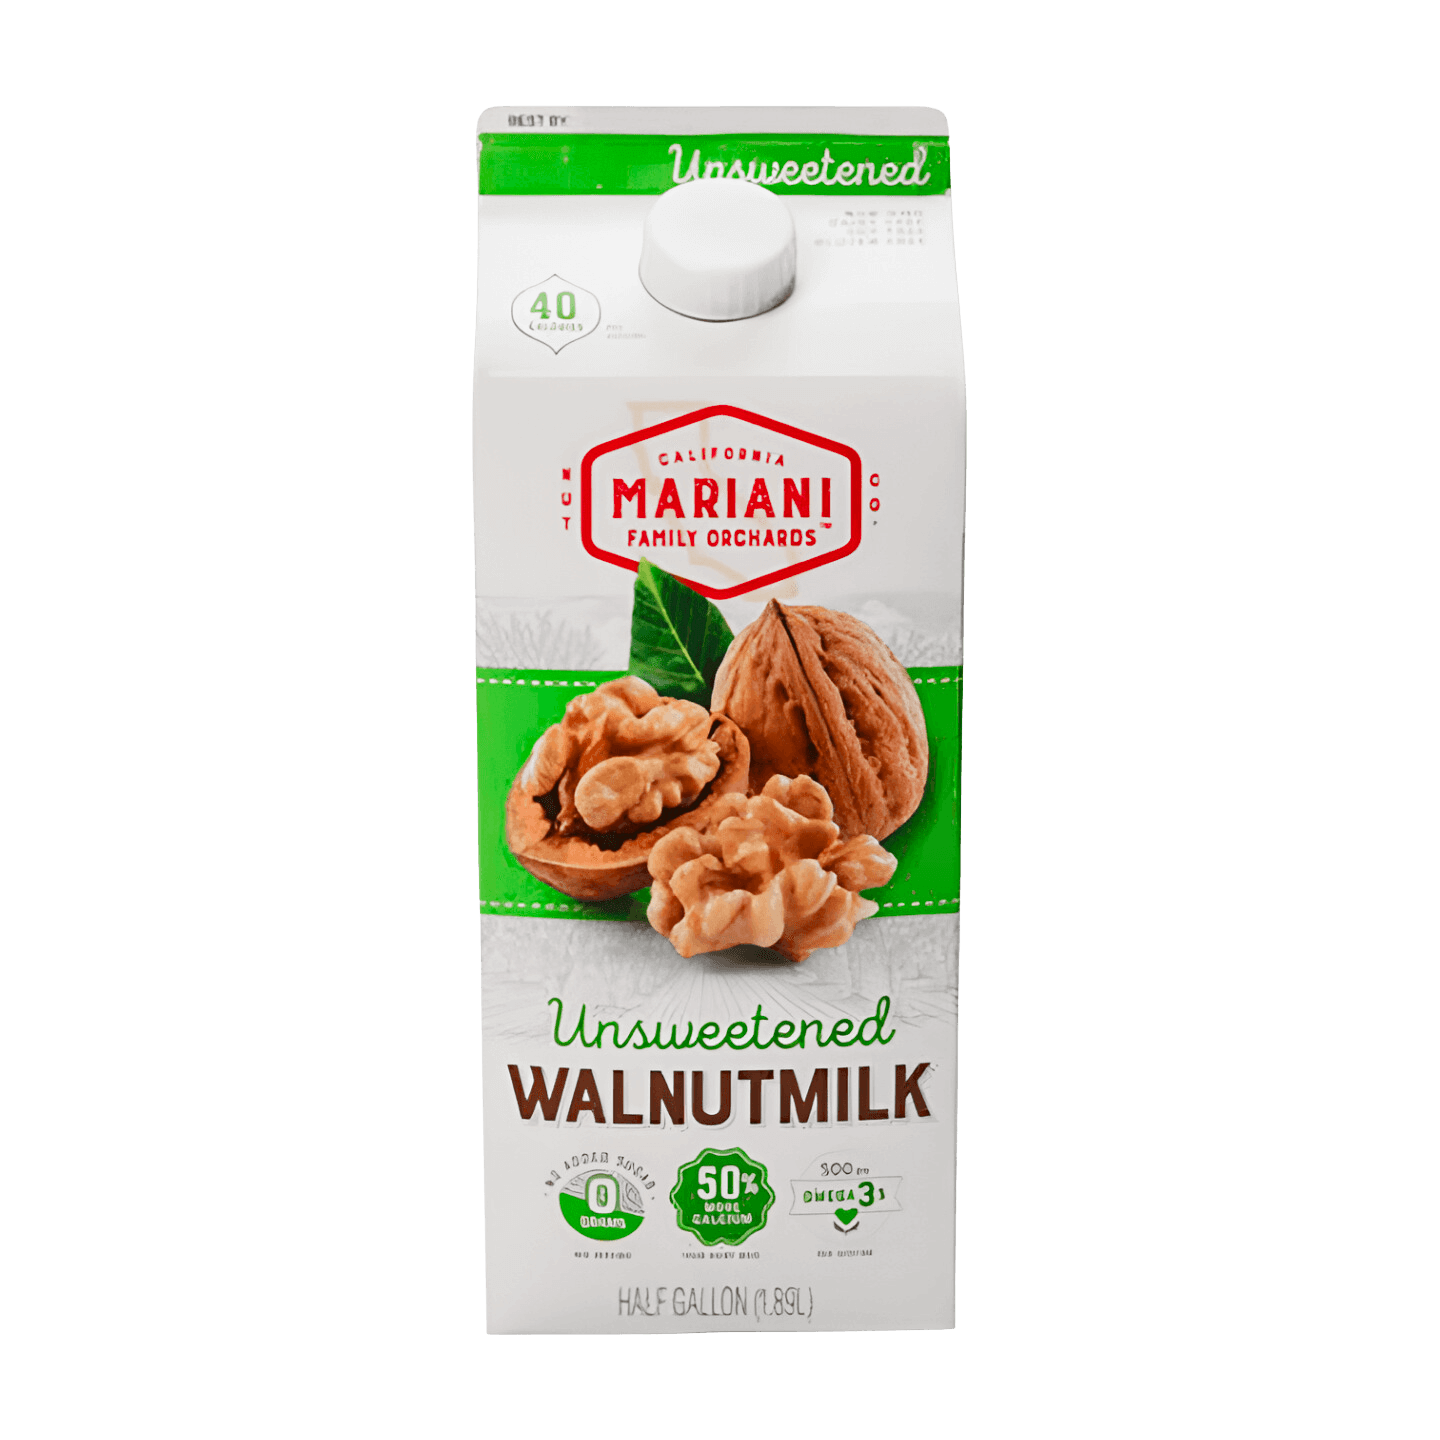 Mariani Unsweetened Walnutmilk